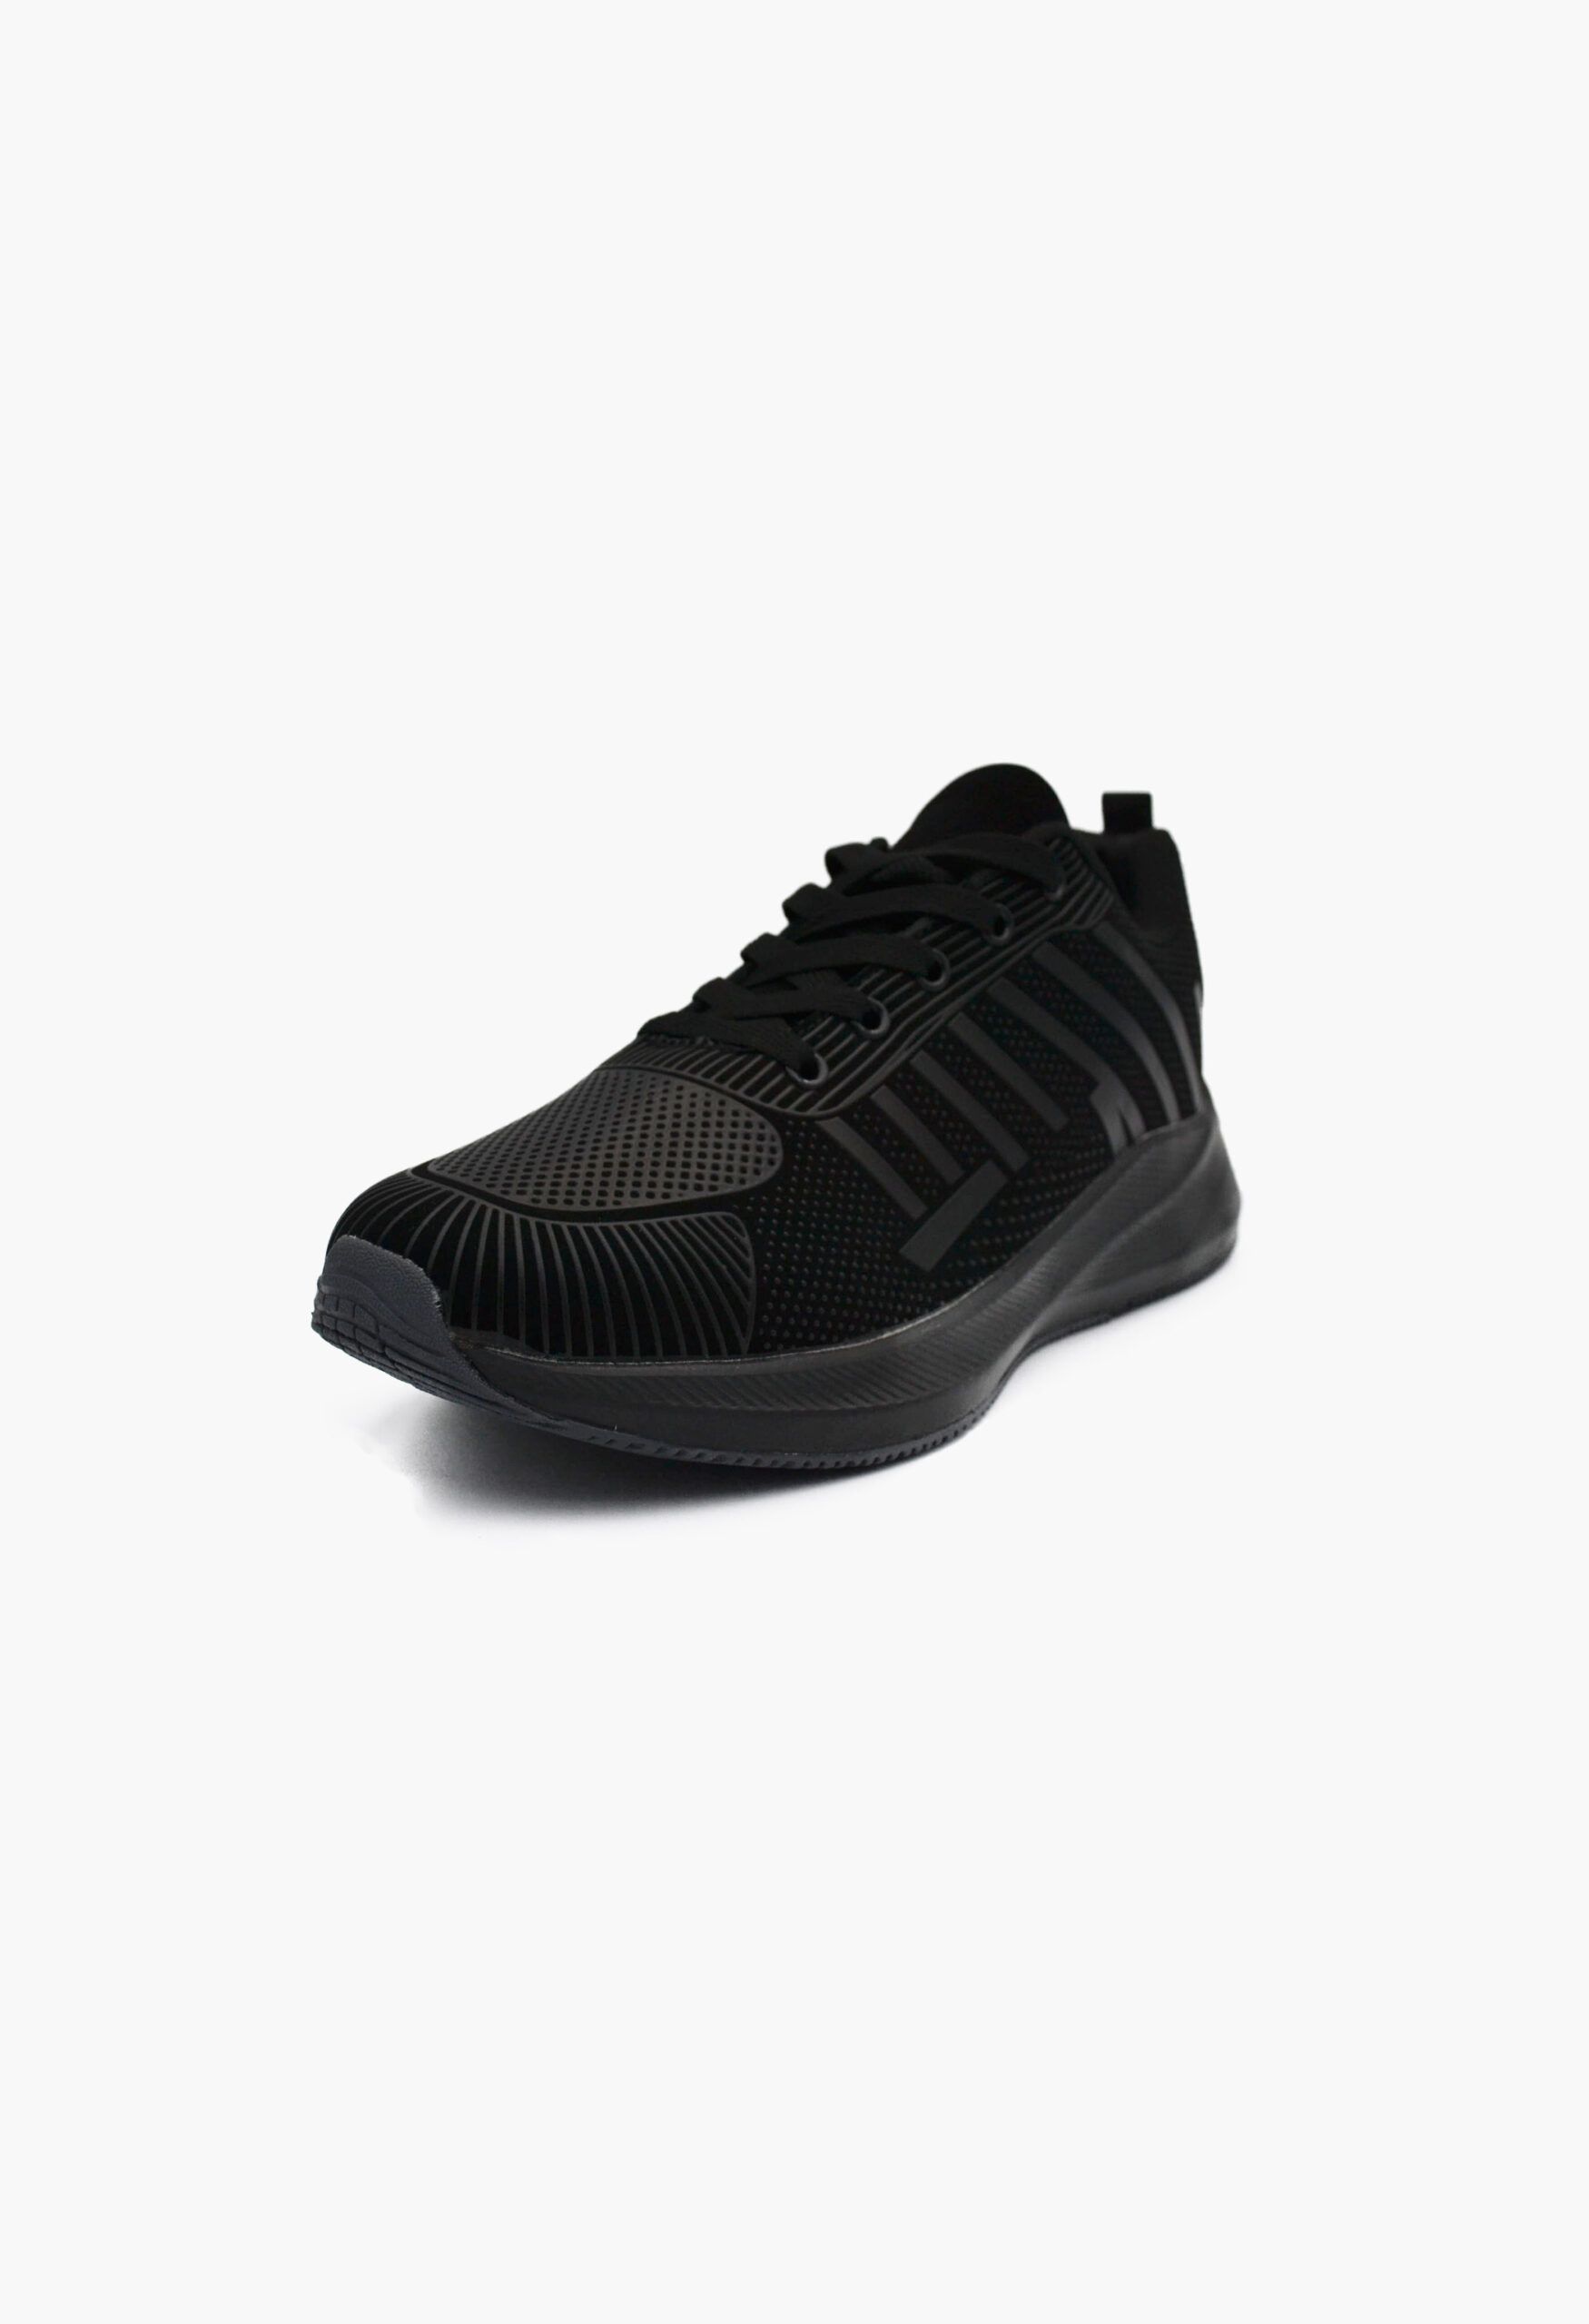 Ανδρικά Αθλητικά Παπούτσια για Τρέξιμο Μαύρο / A-47-black/grey ΑΘΛΗΤΙΚΑ & SNEAKERS joya.gr